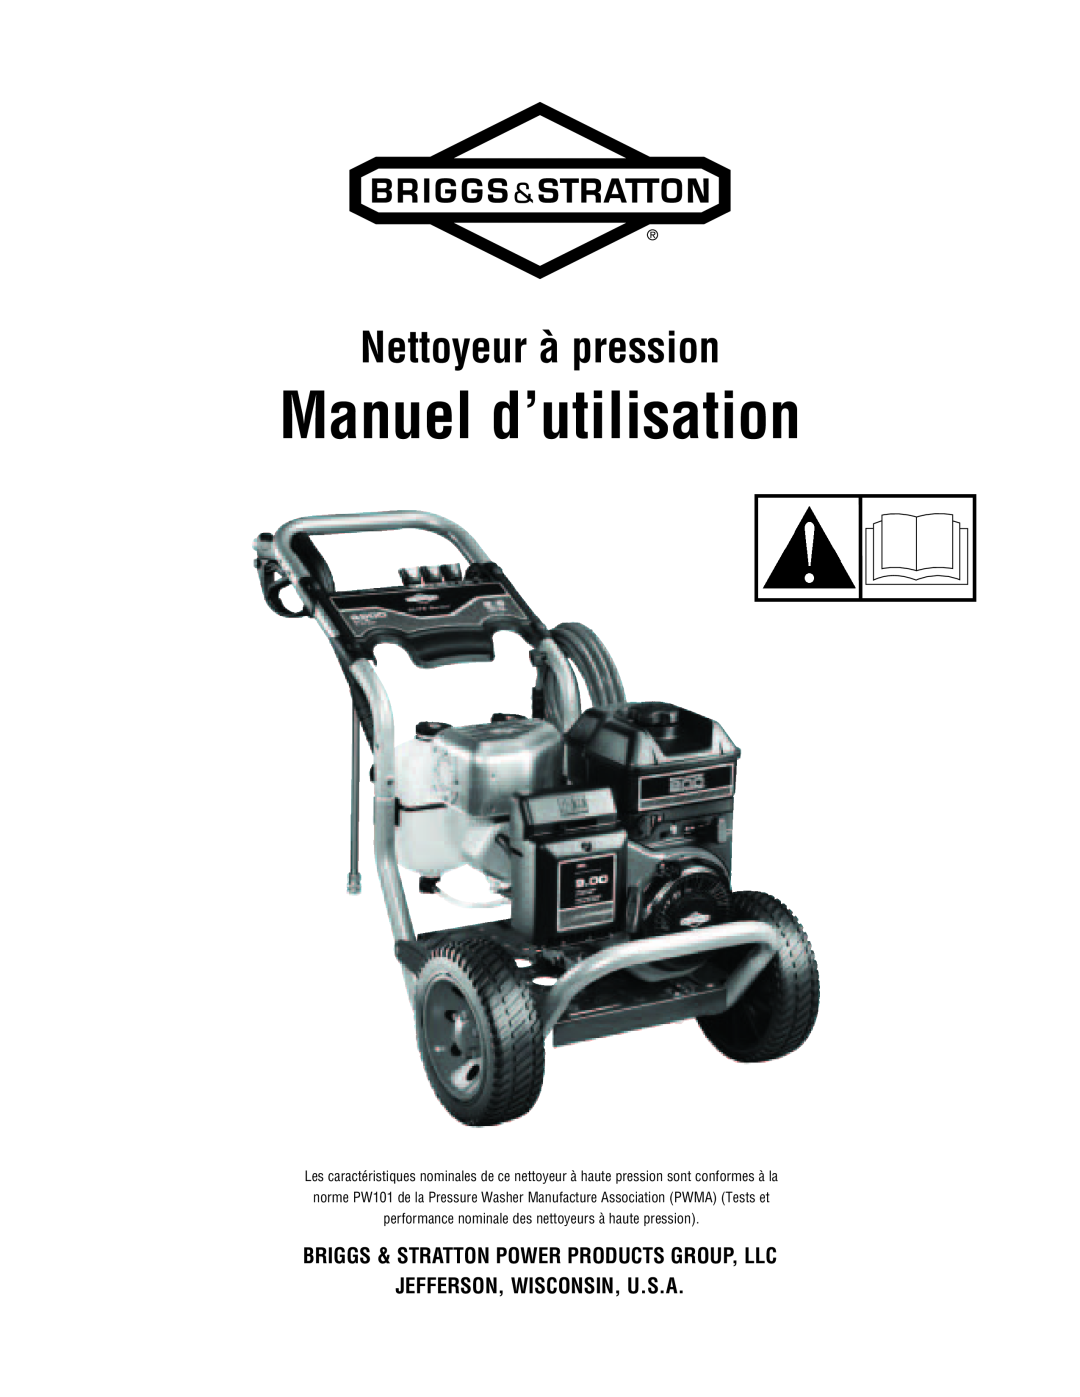 Briggs & Stratton 2900 PSI manual Manuel d’utilisation, Nettoyeur à pression 